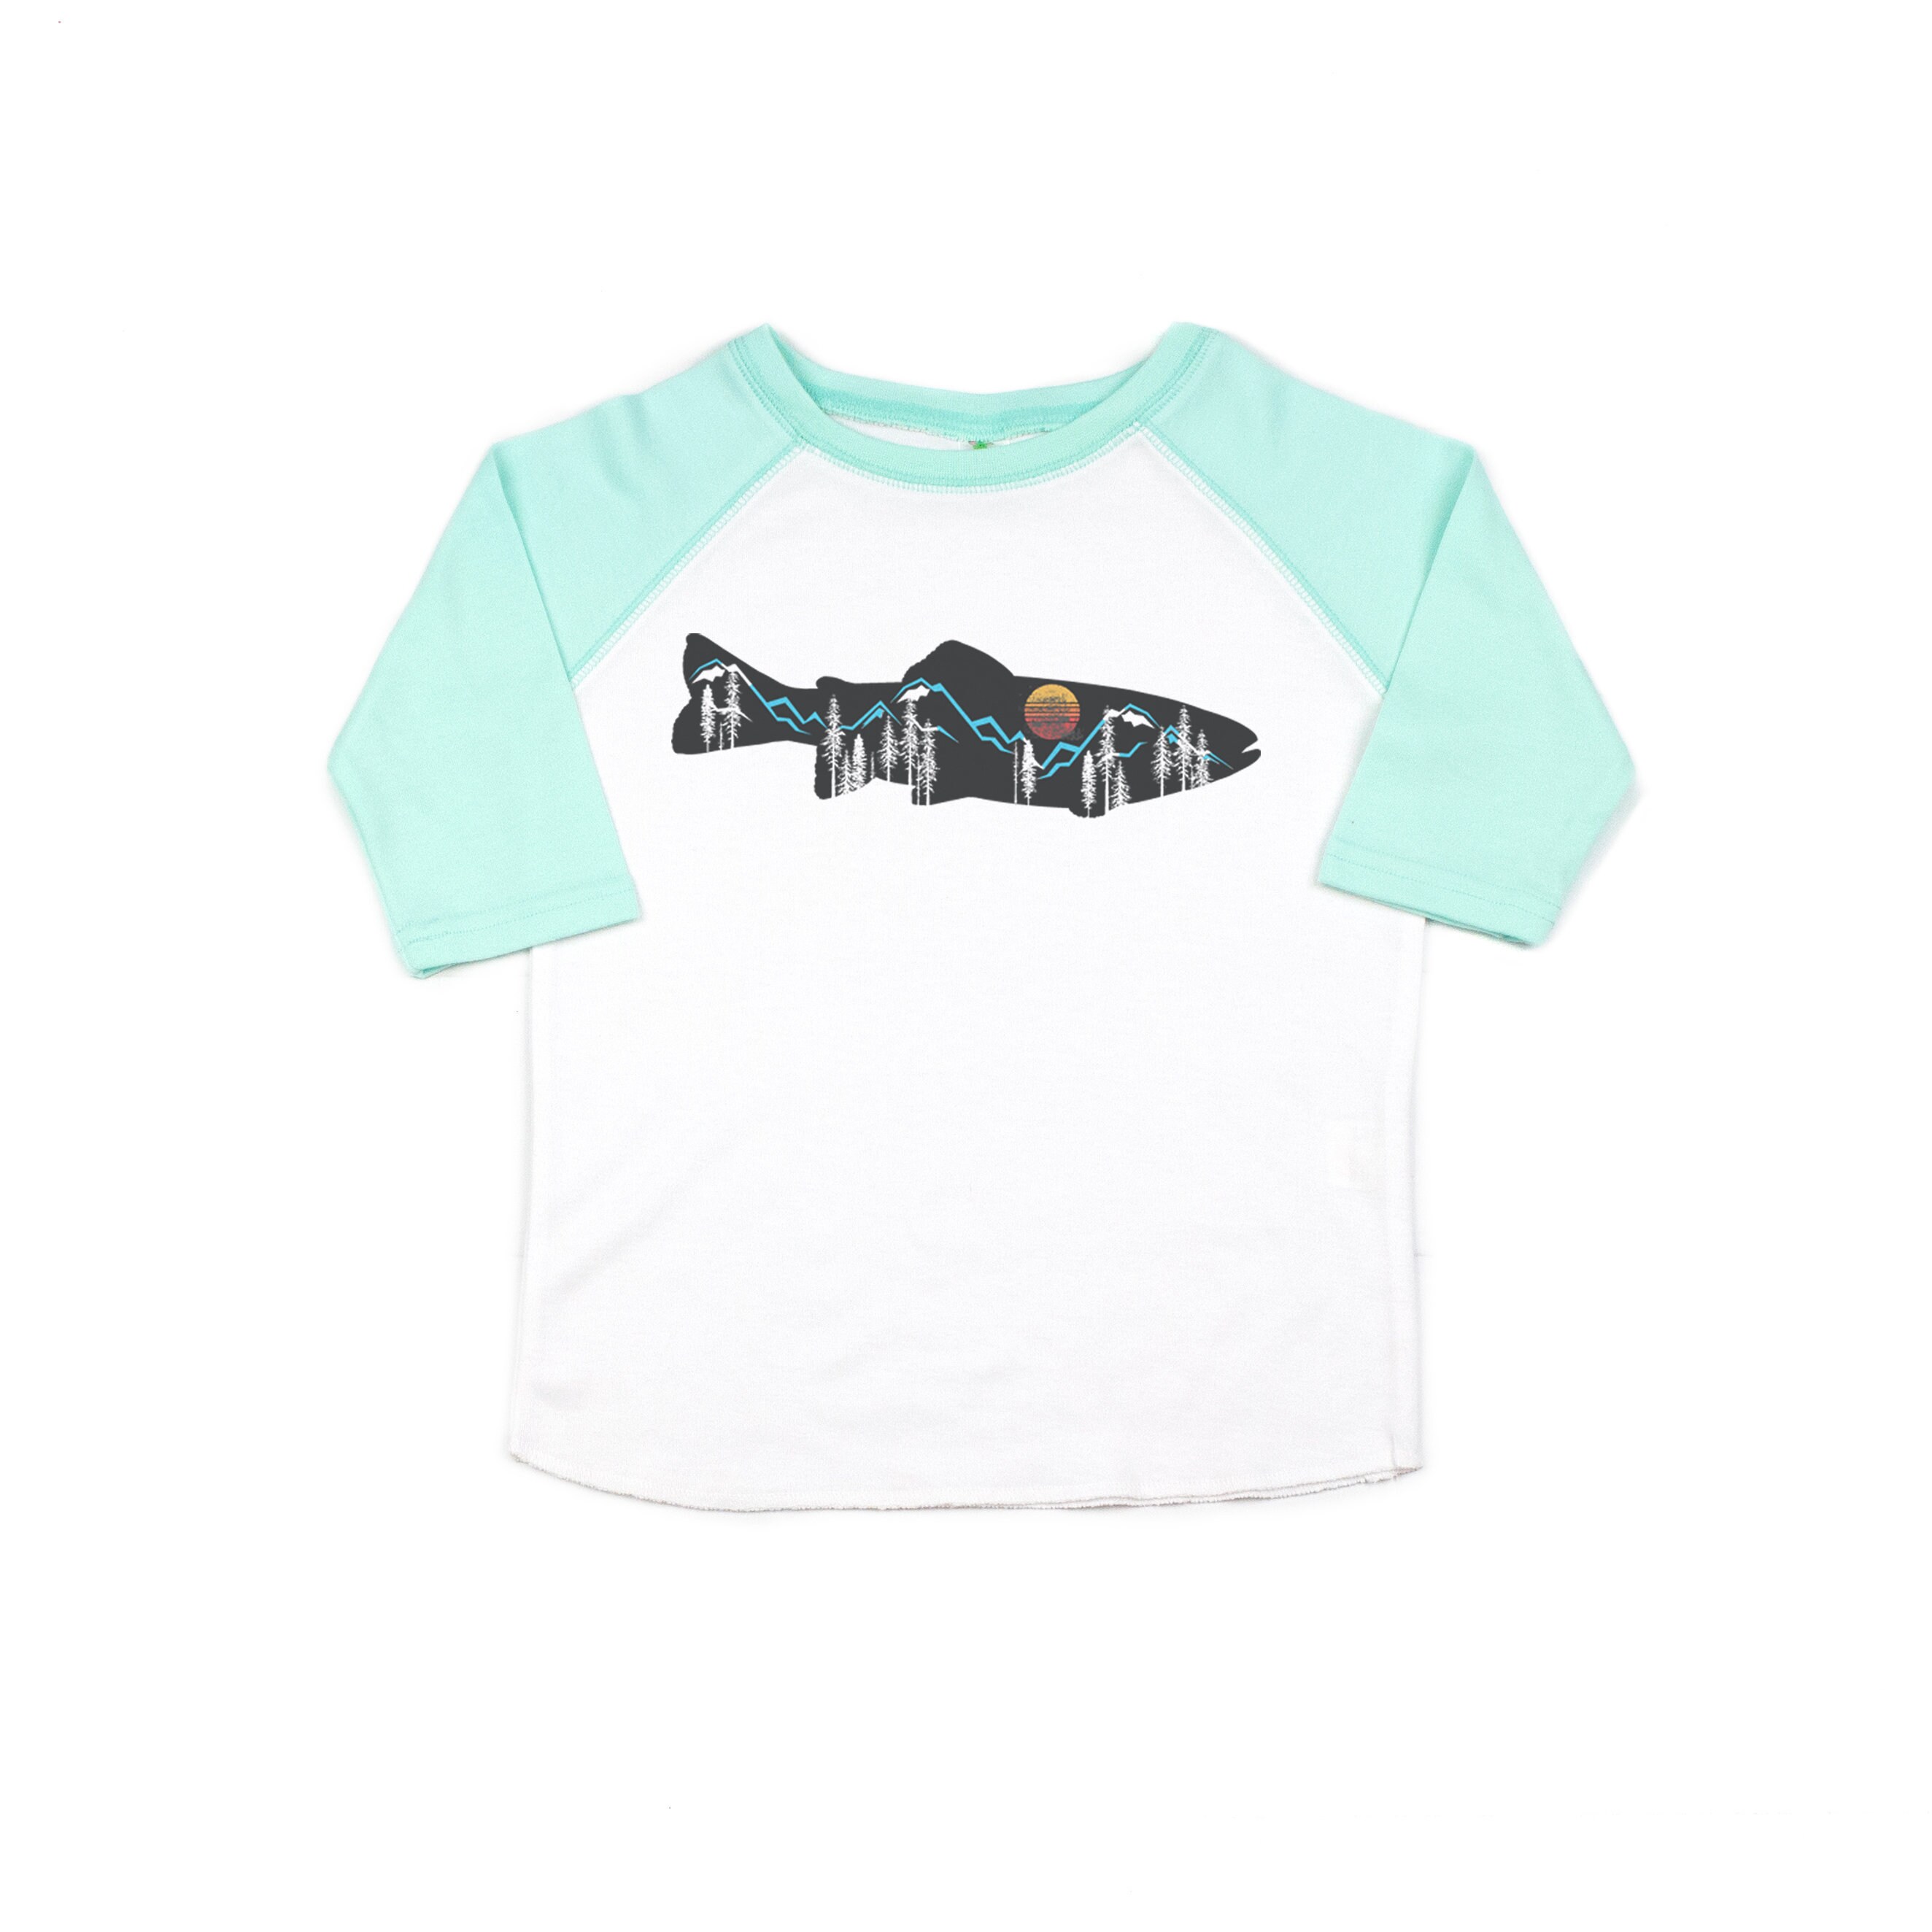 Kids Fishing Shirt, Mountain Trout, Toddler Fly Fishing Shirt